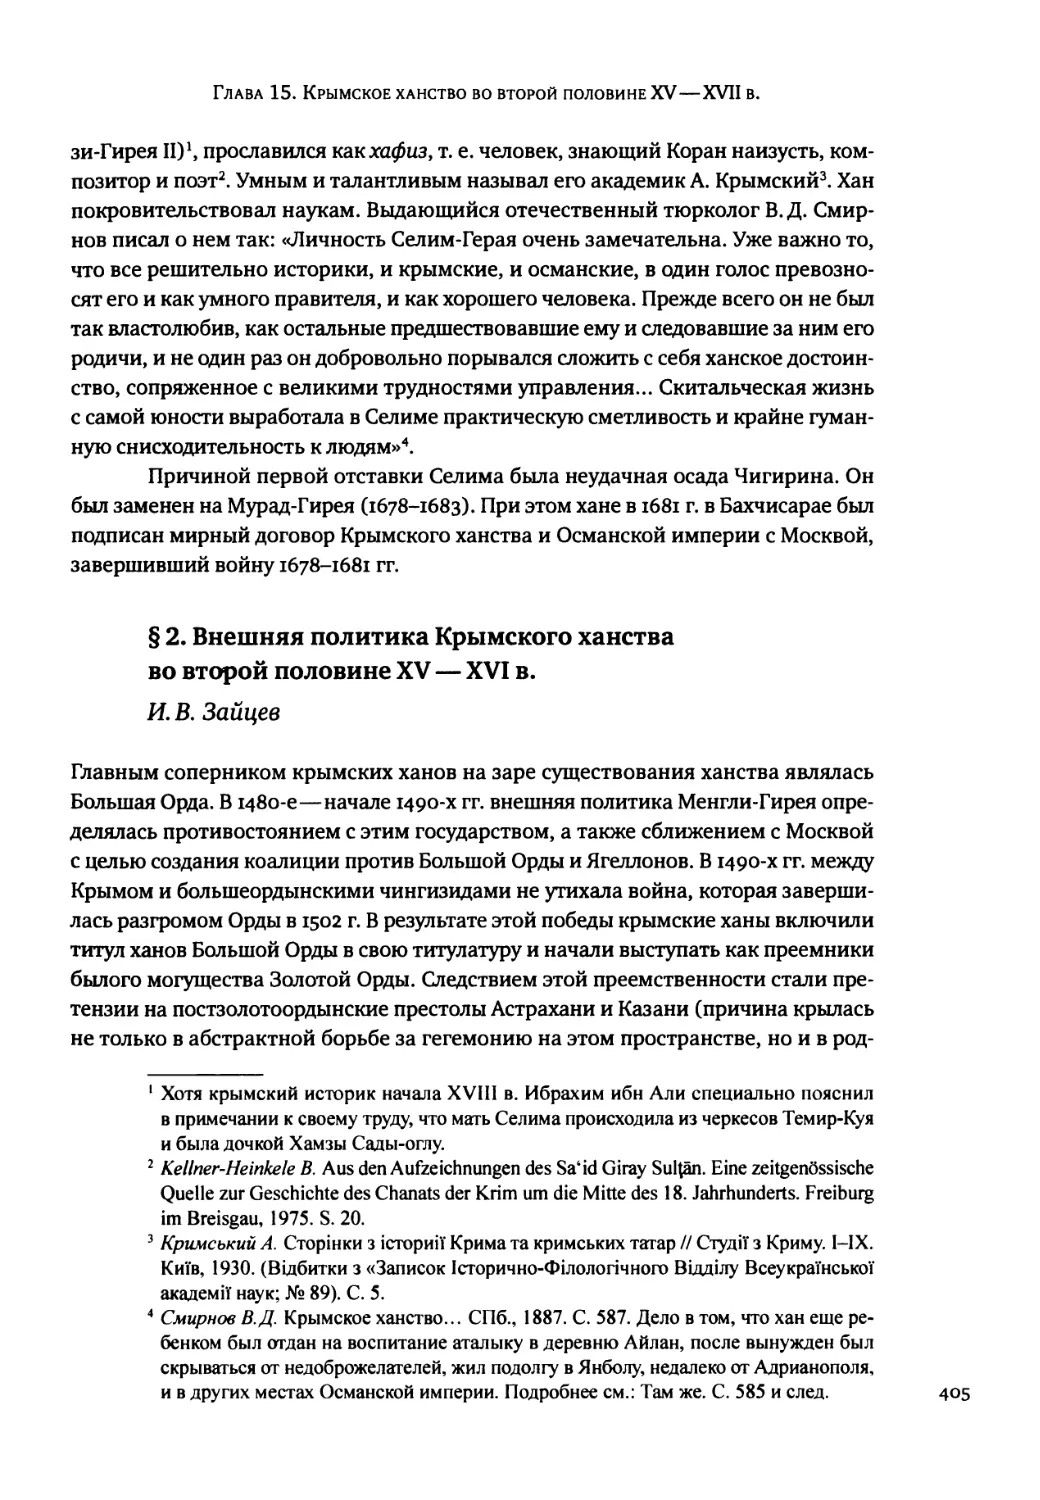 § 2. Внешняя политика Крымского ханства во второй половине XV — XVI в